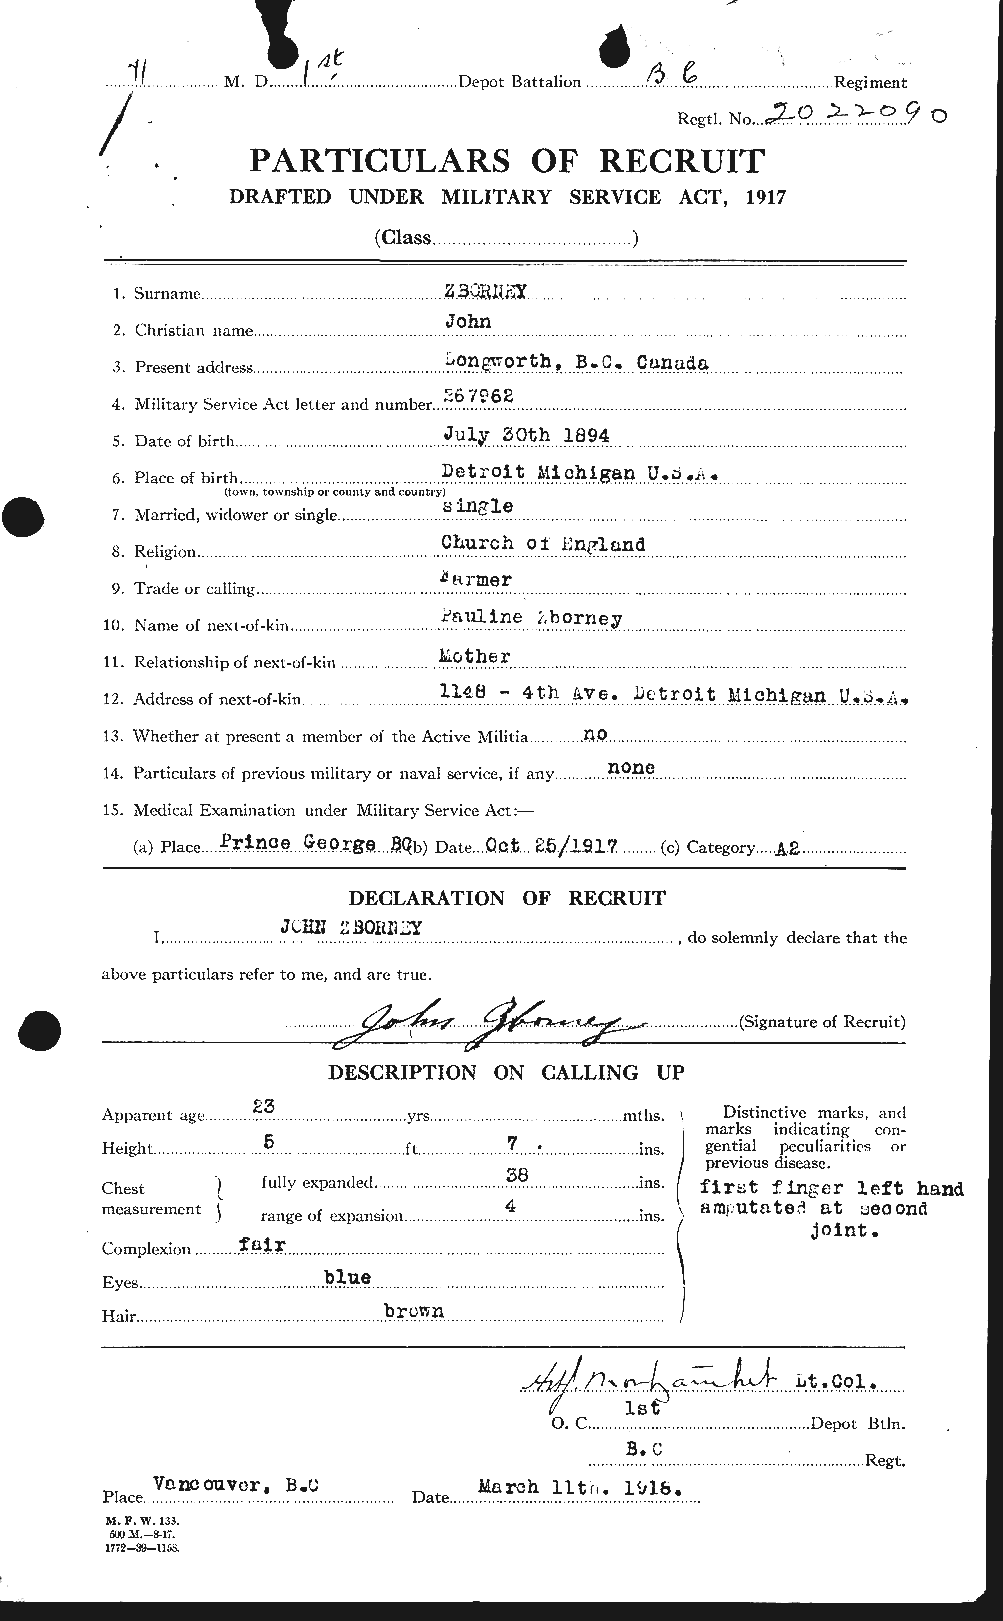 Dossiers du Personnel de la Première Guerre mondiale - CEC 660003a